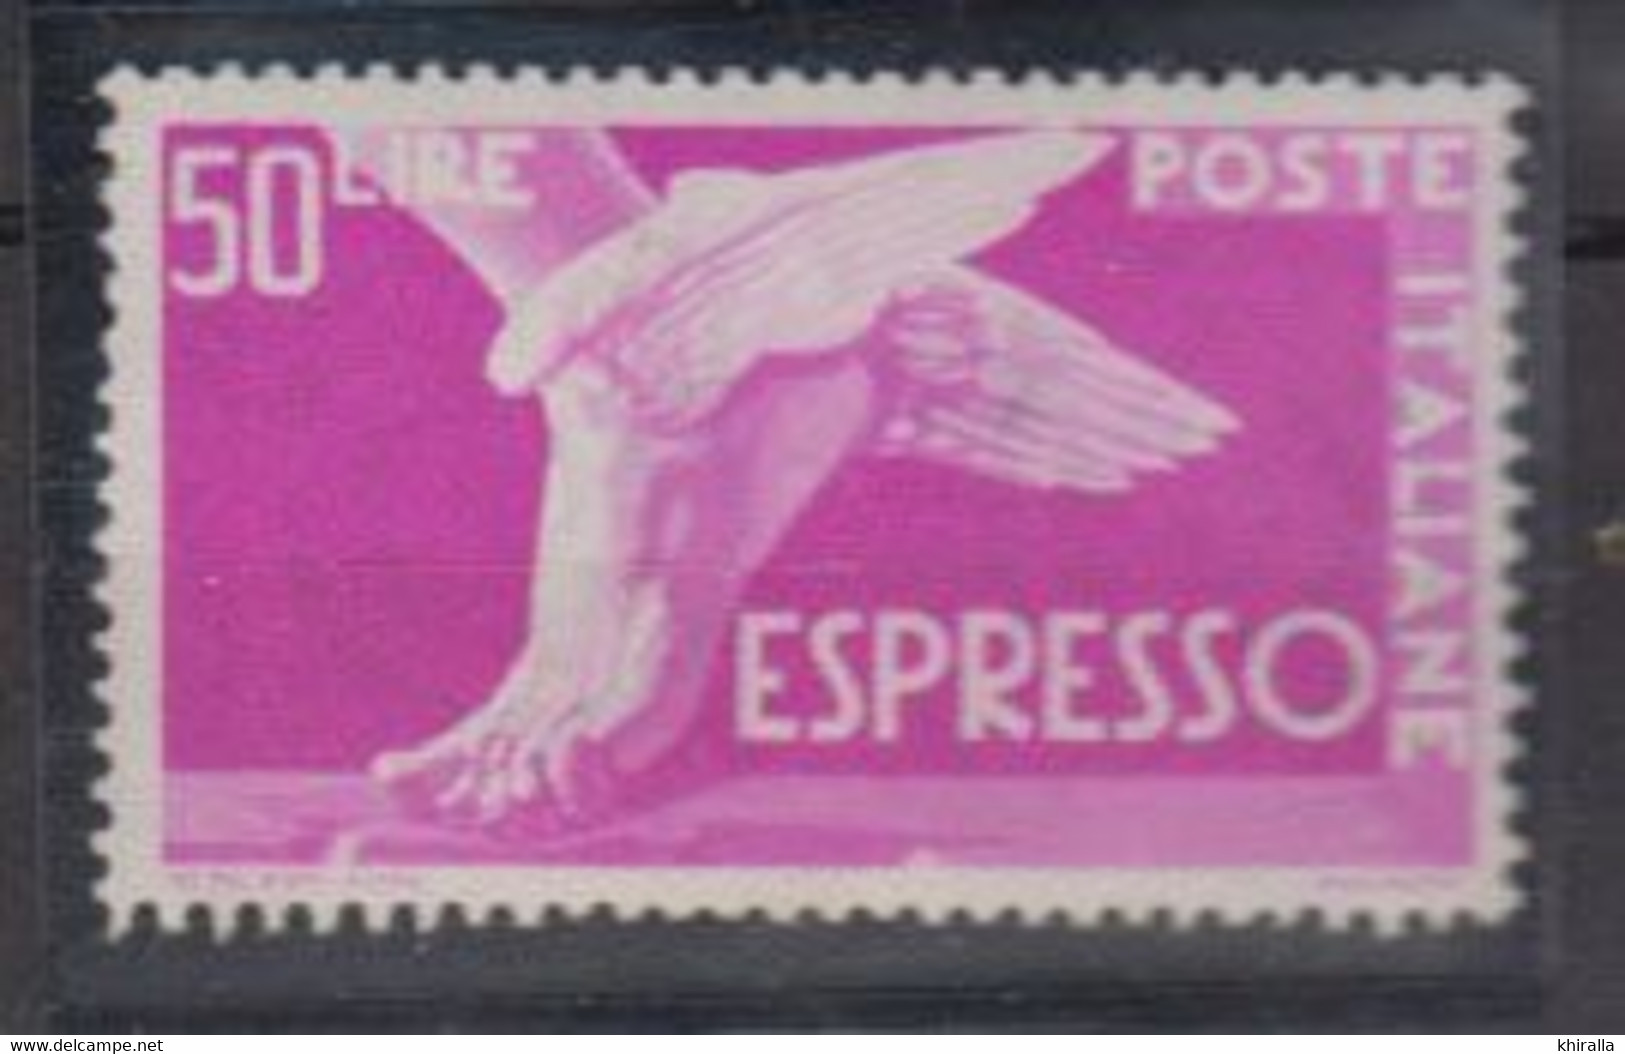 ITALIE    1945         Exprésse       N°  31A      COTE   25 € 00       ( F 426 ) - Poste Exprèsse